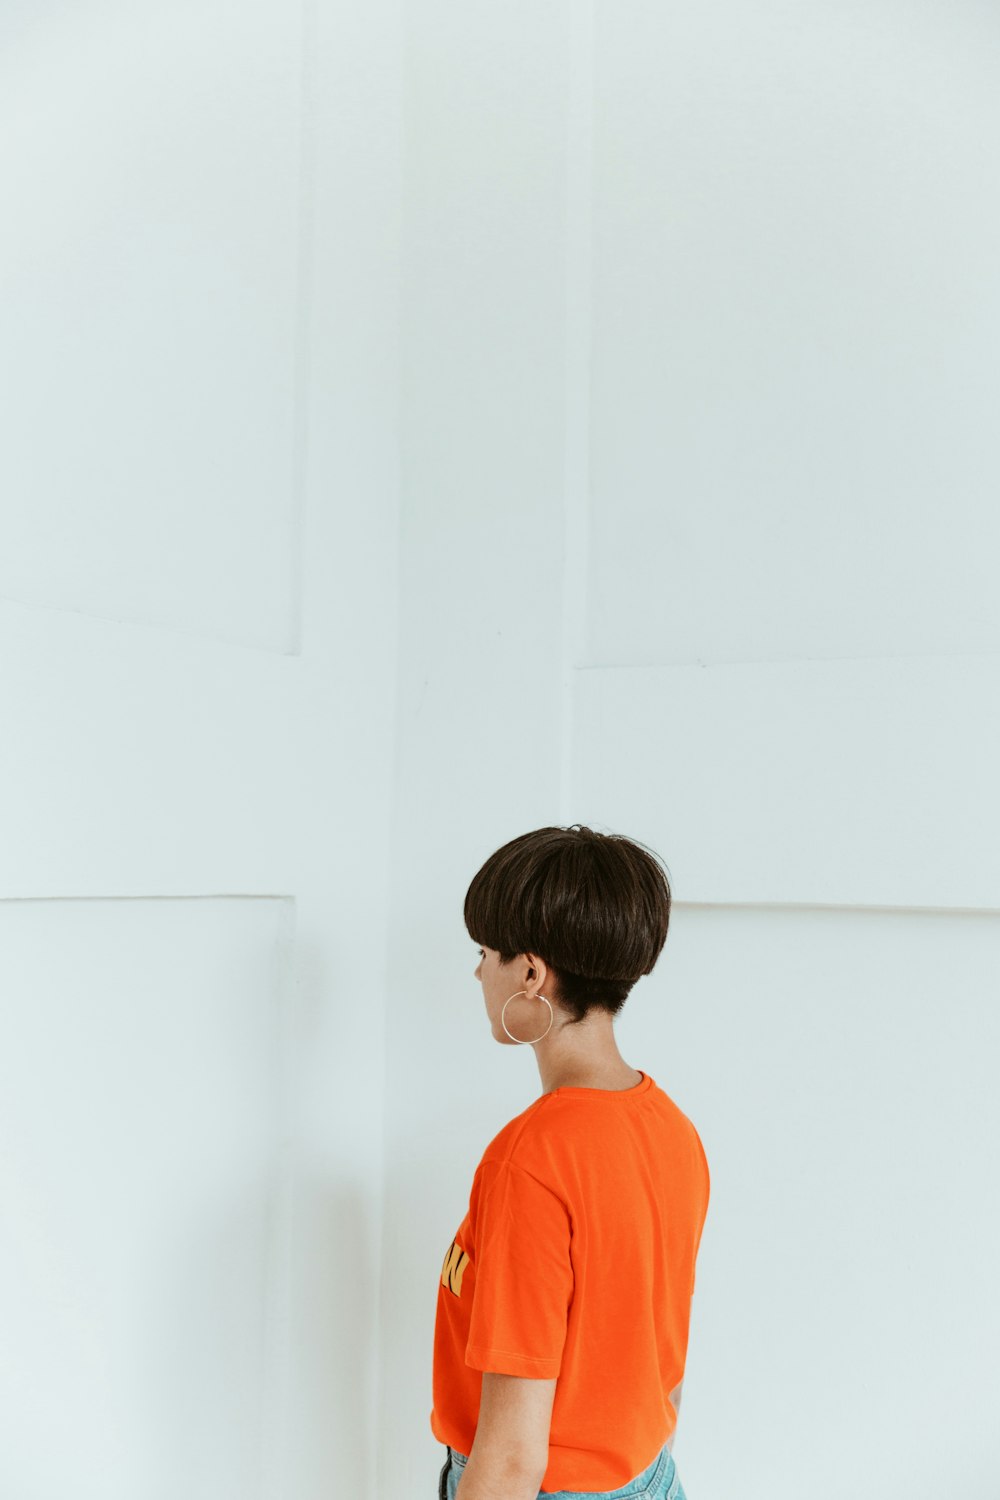 woman wearing orange shirt facing white wall